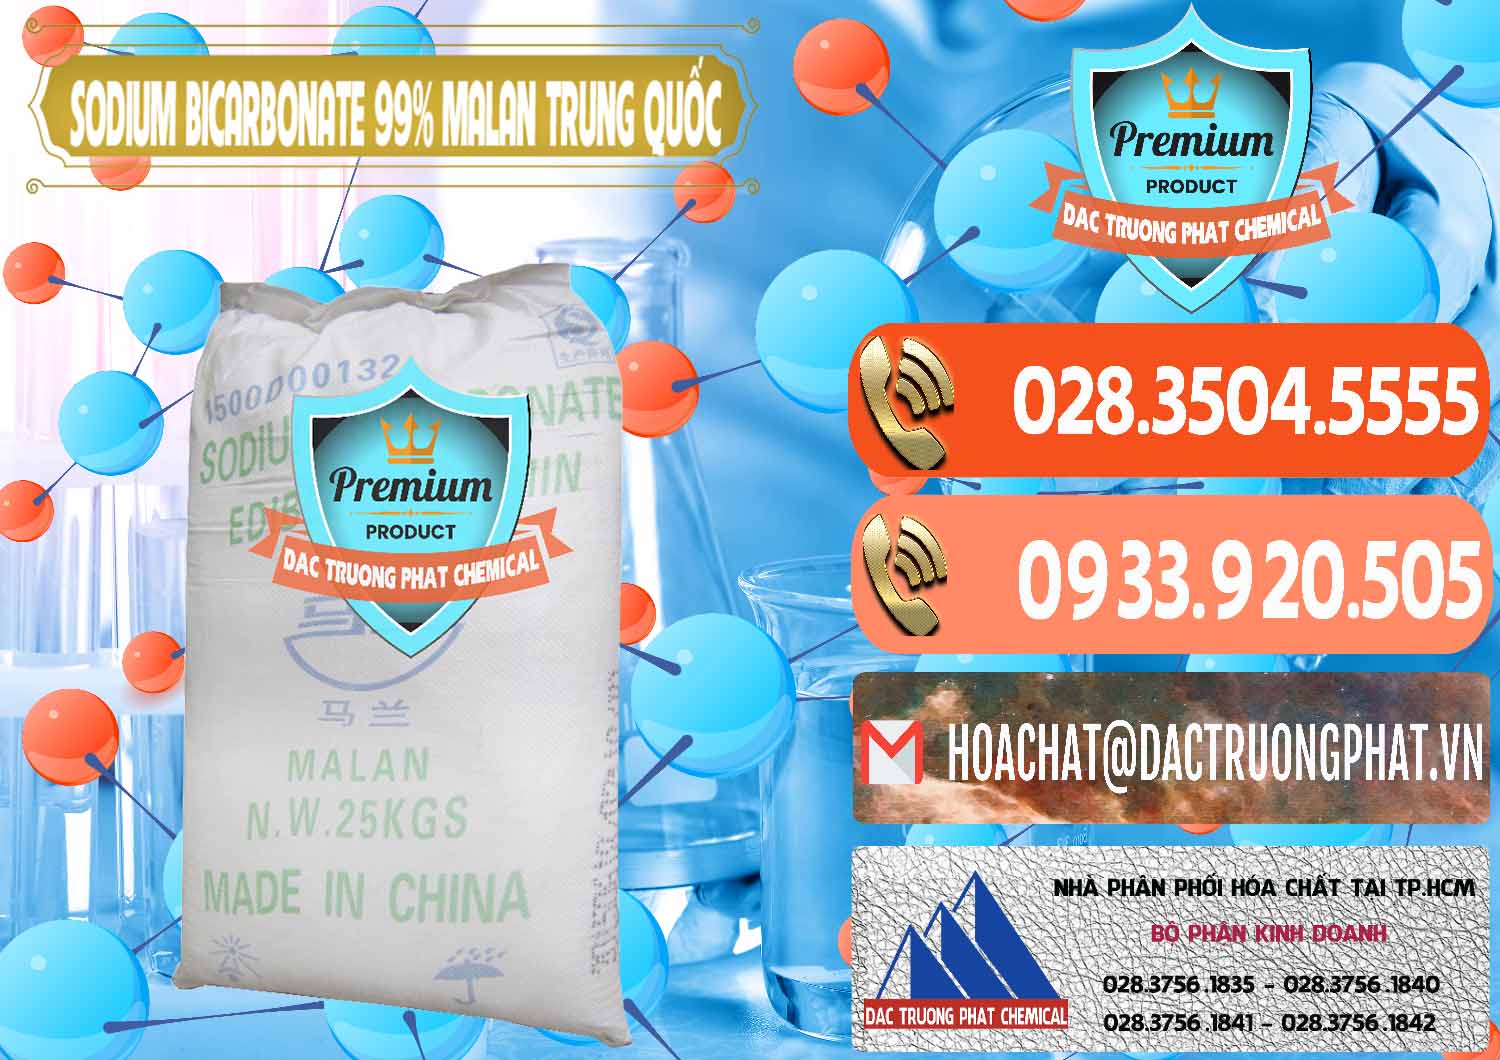 Nơi chuyên bán _ cung cấp Sodium Bicarbonate – Bicar NaHCO3 Malan Trung Quốc China - 0218 - Cung cấp và kinh doanh hóa chất tại TP.HCM - hoachatmientay.com